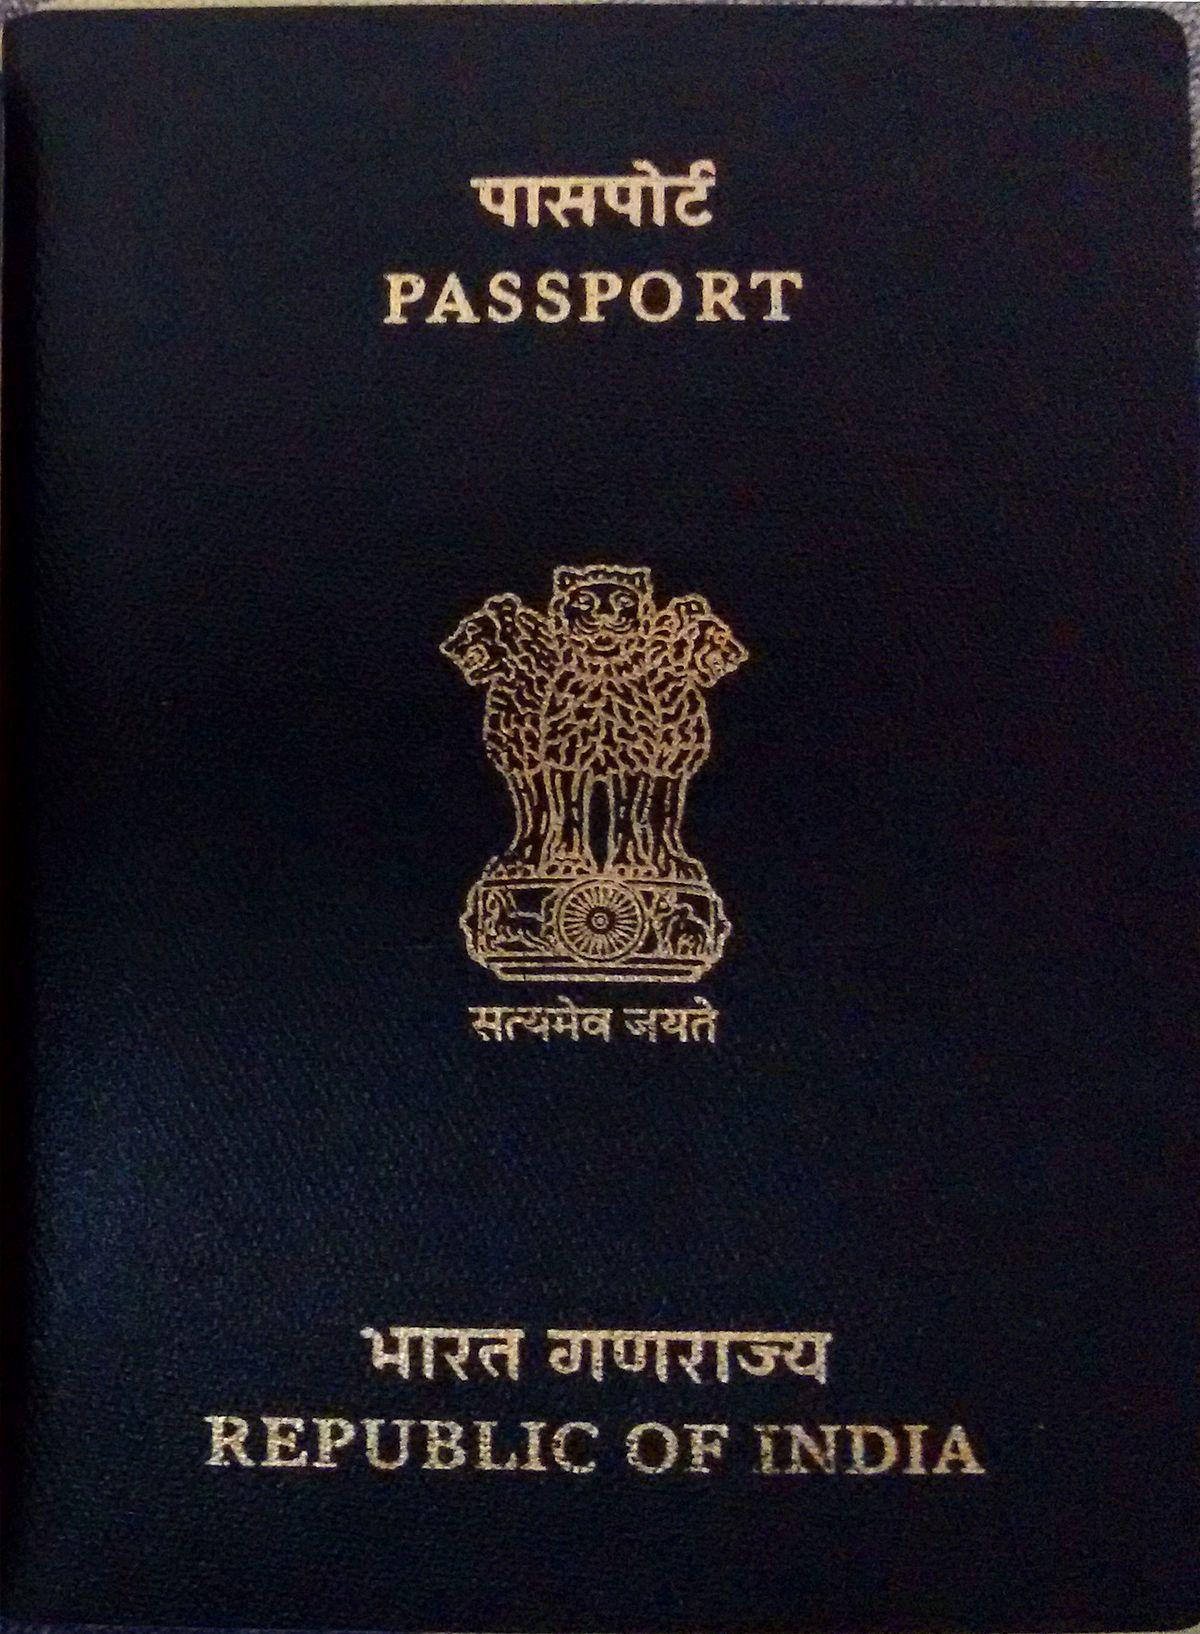 All Indian passports to be bilingual- English and Hindi both